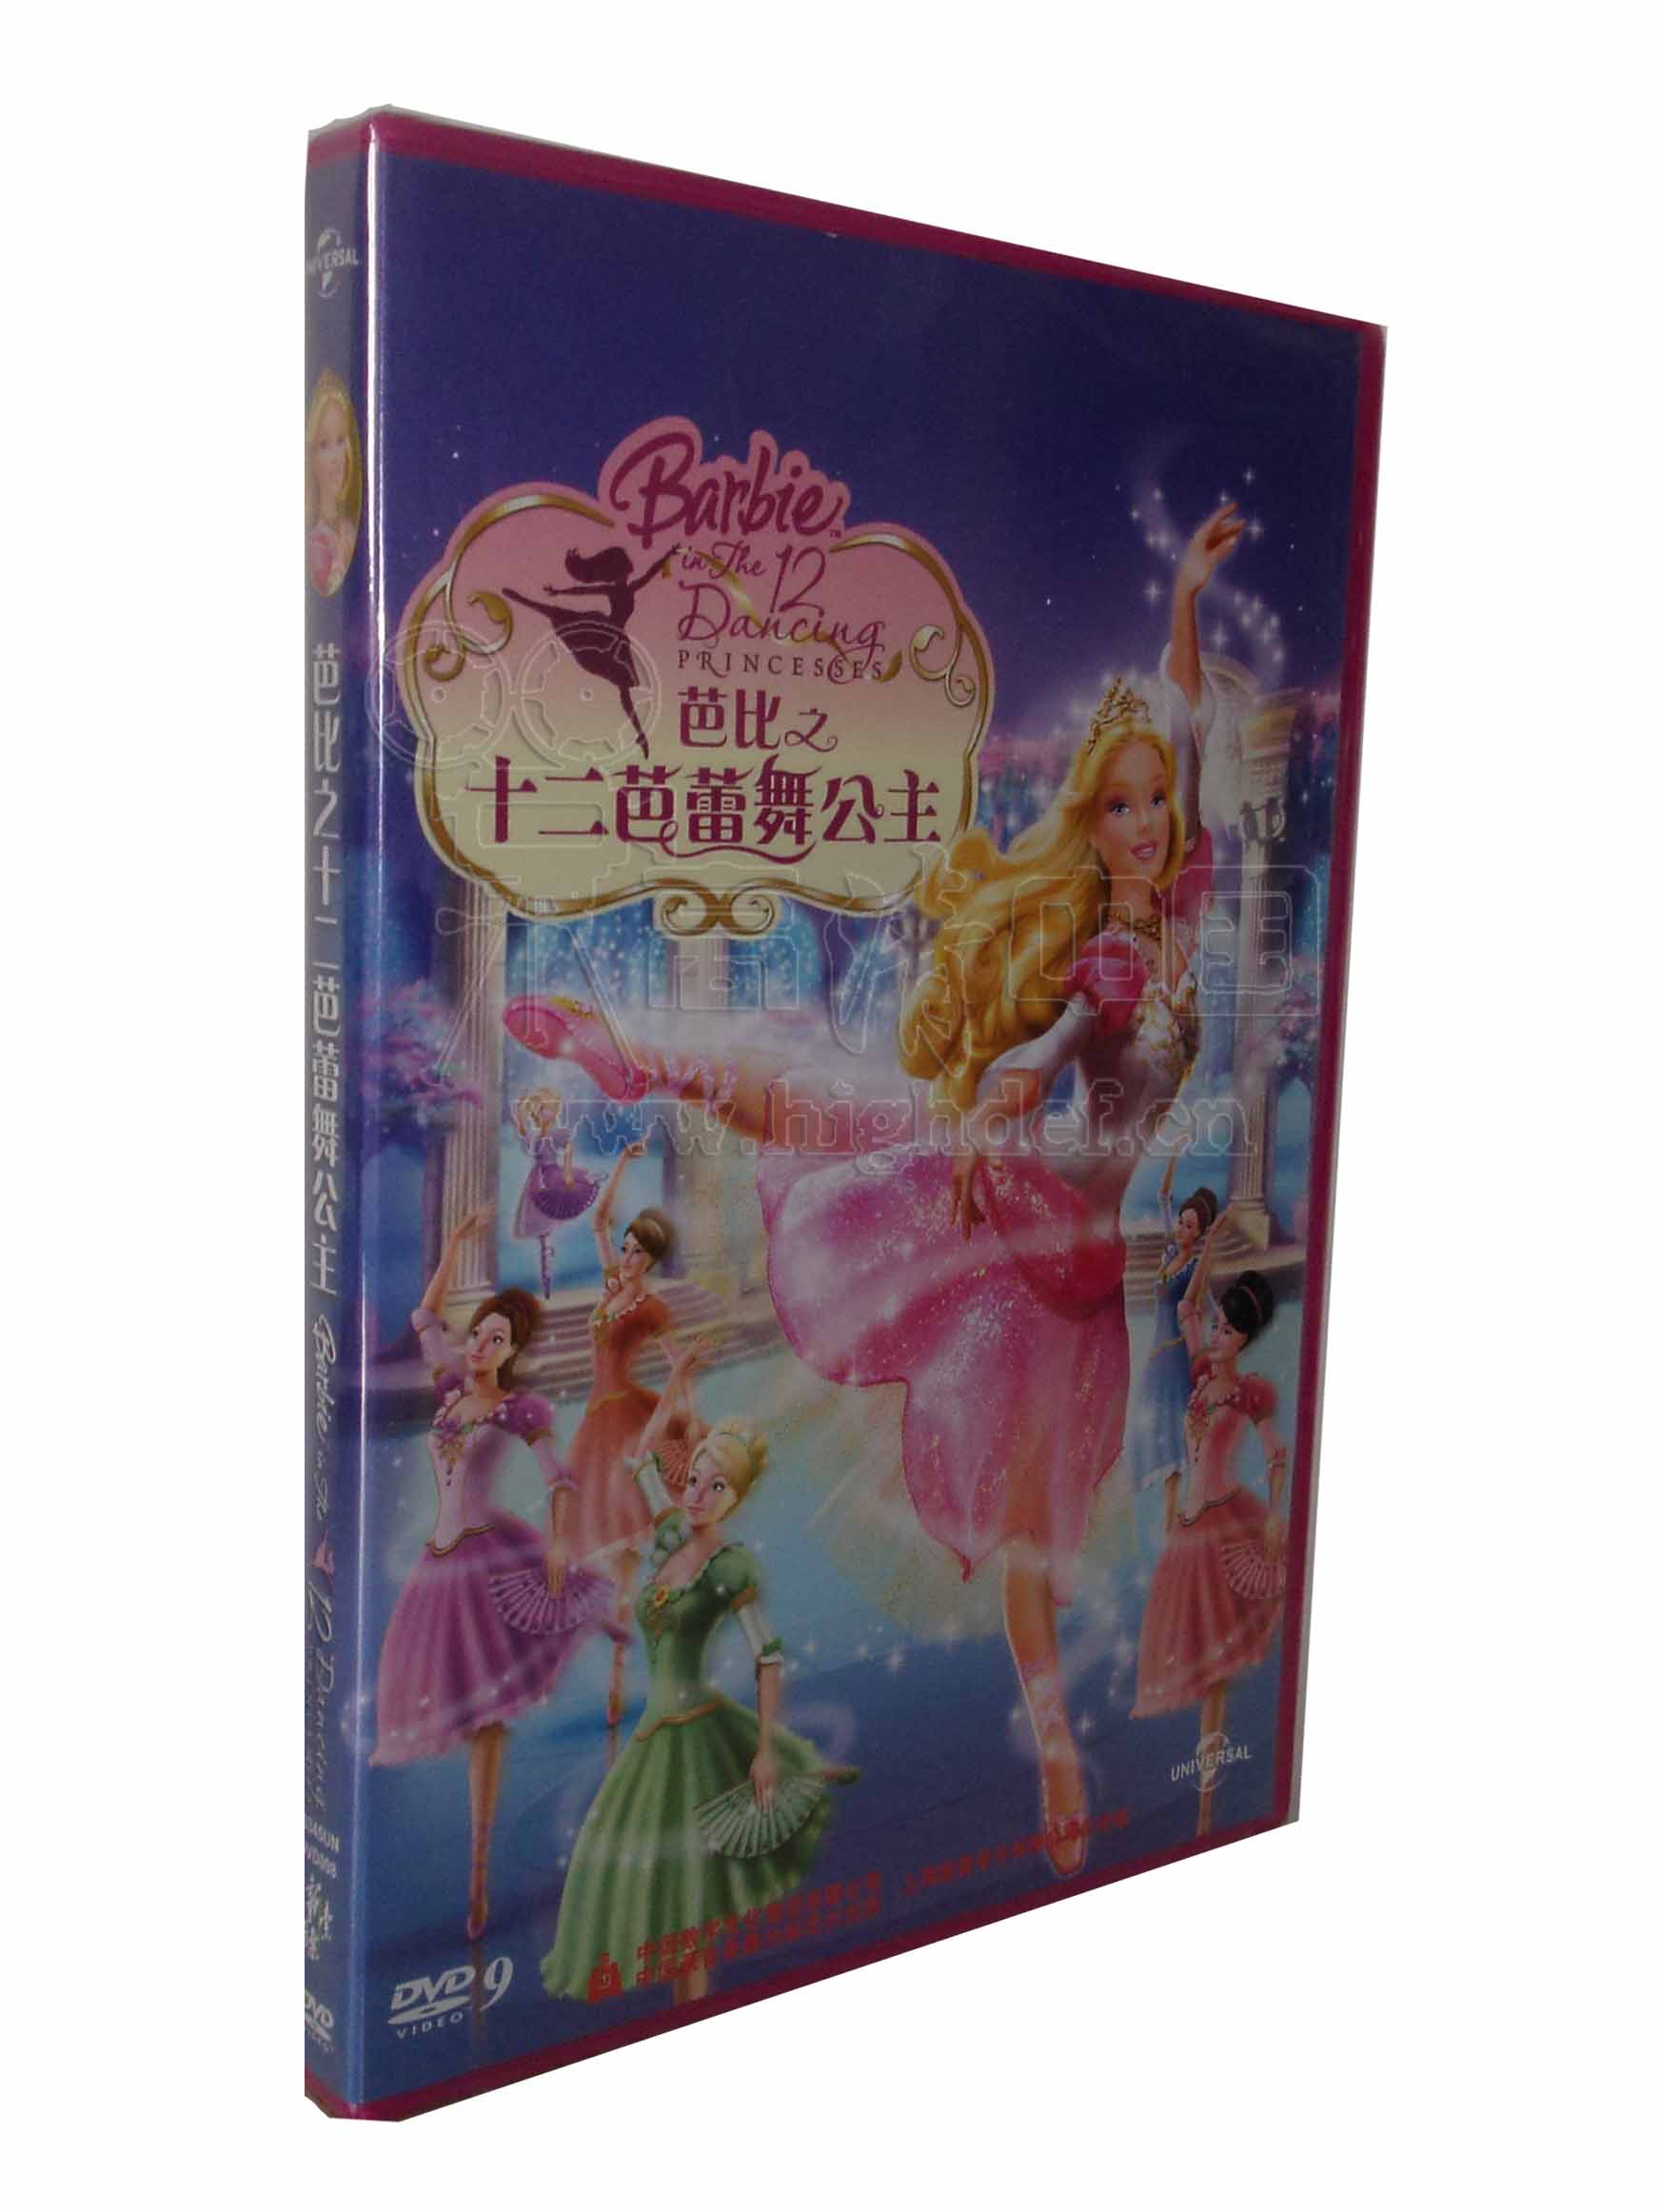 新索正版dvd:芭比之十二芭蕾舞公主/12个跳舞的公主 d